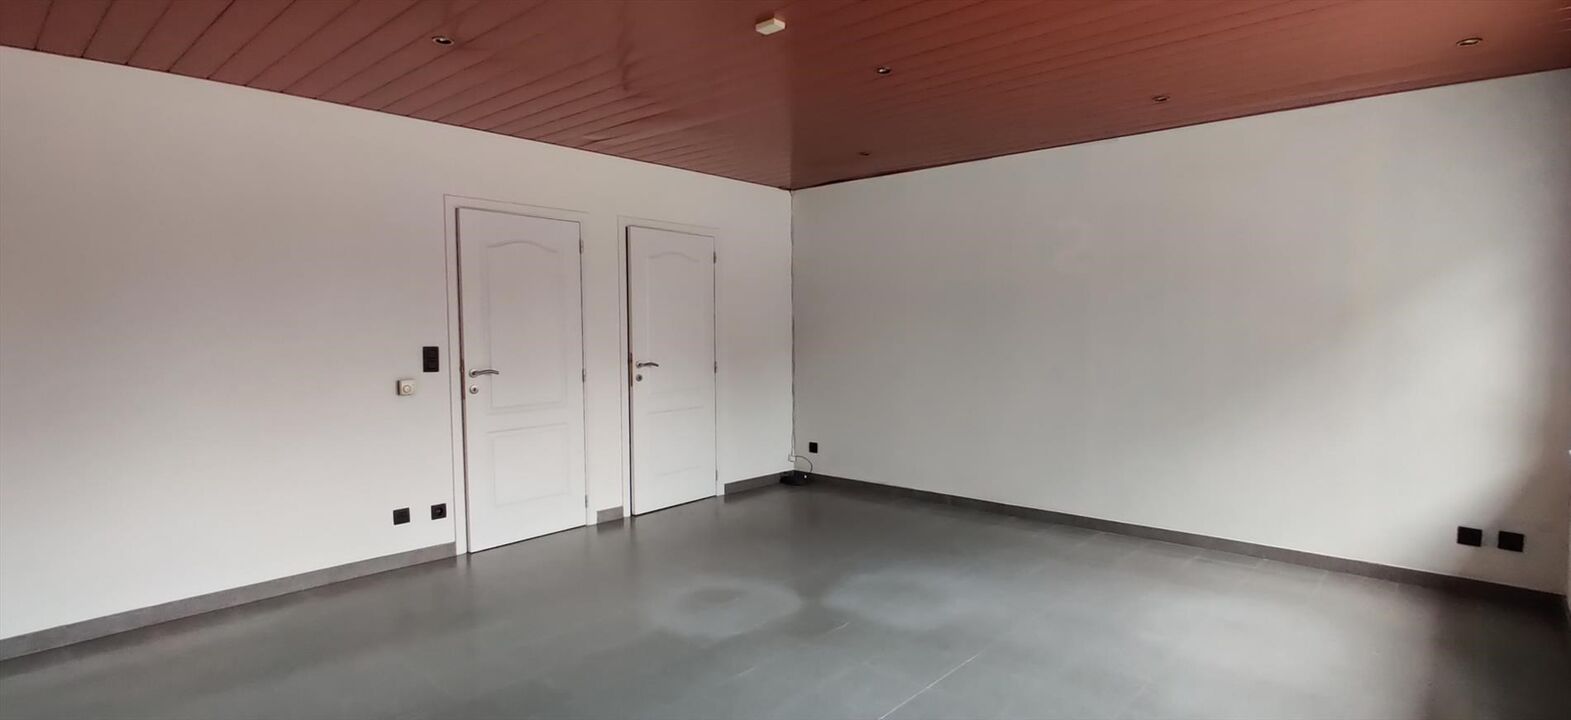  Winkelpand/kantoorruimte van ca 47m² met keuken, toilet en kelder gelegen in het centrum van Rijkevorsel. foto 3